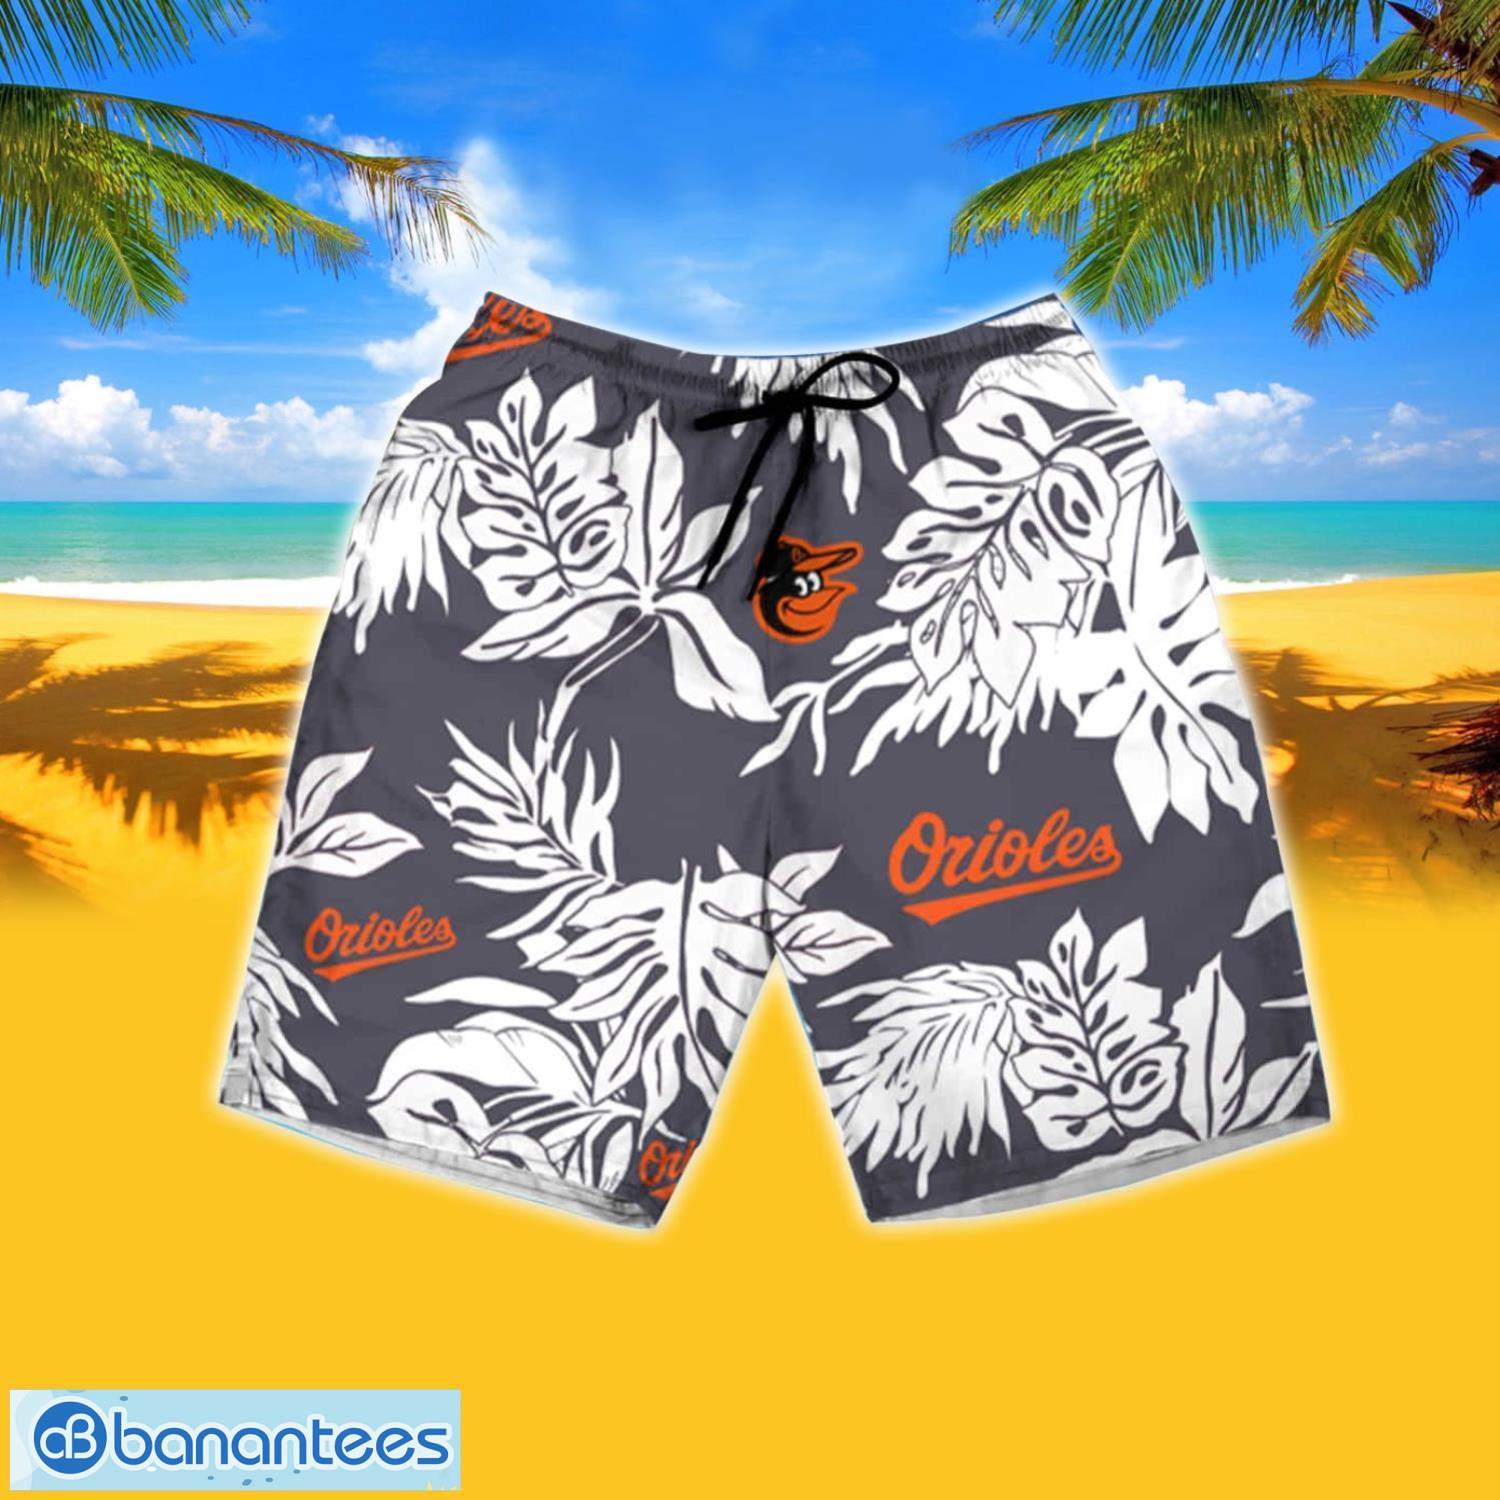 Boston Red Sox Mlb Summer Hawaiian Shirt And Shorts Happy Summer Gift For  Fans - Banantees